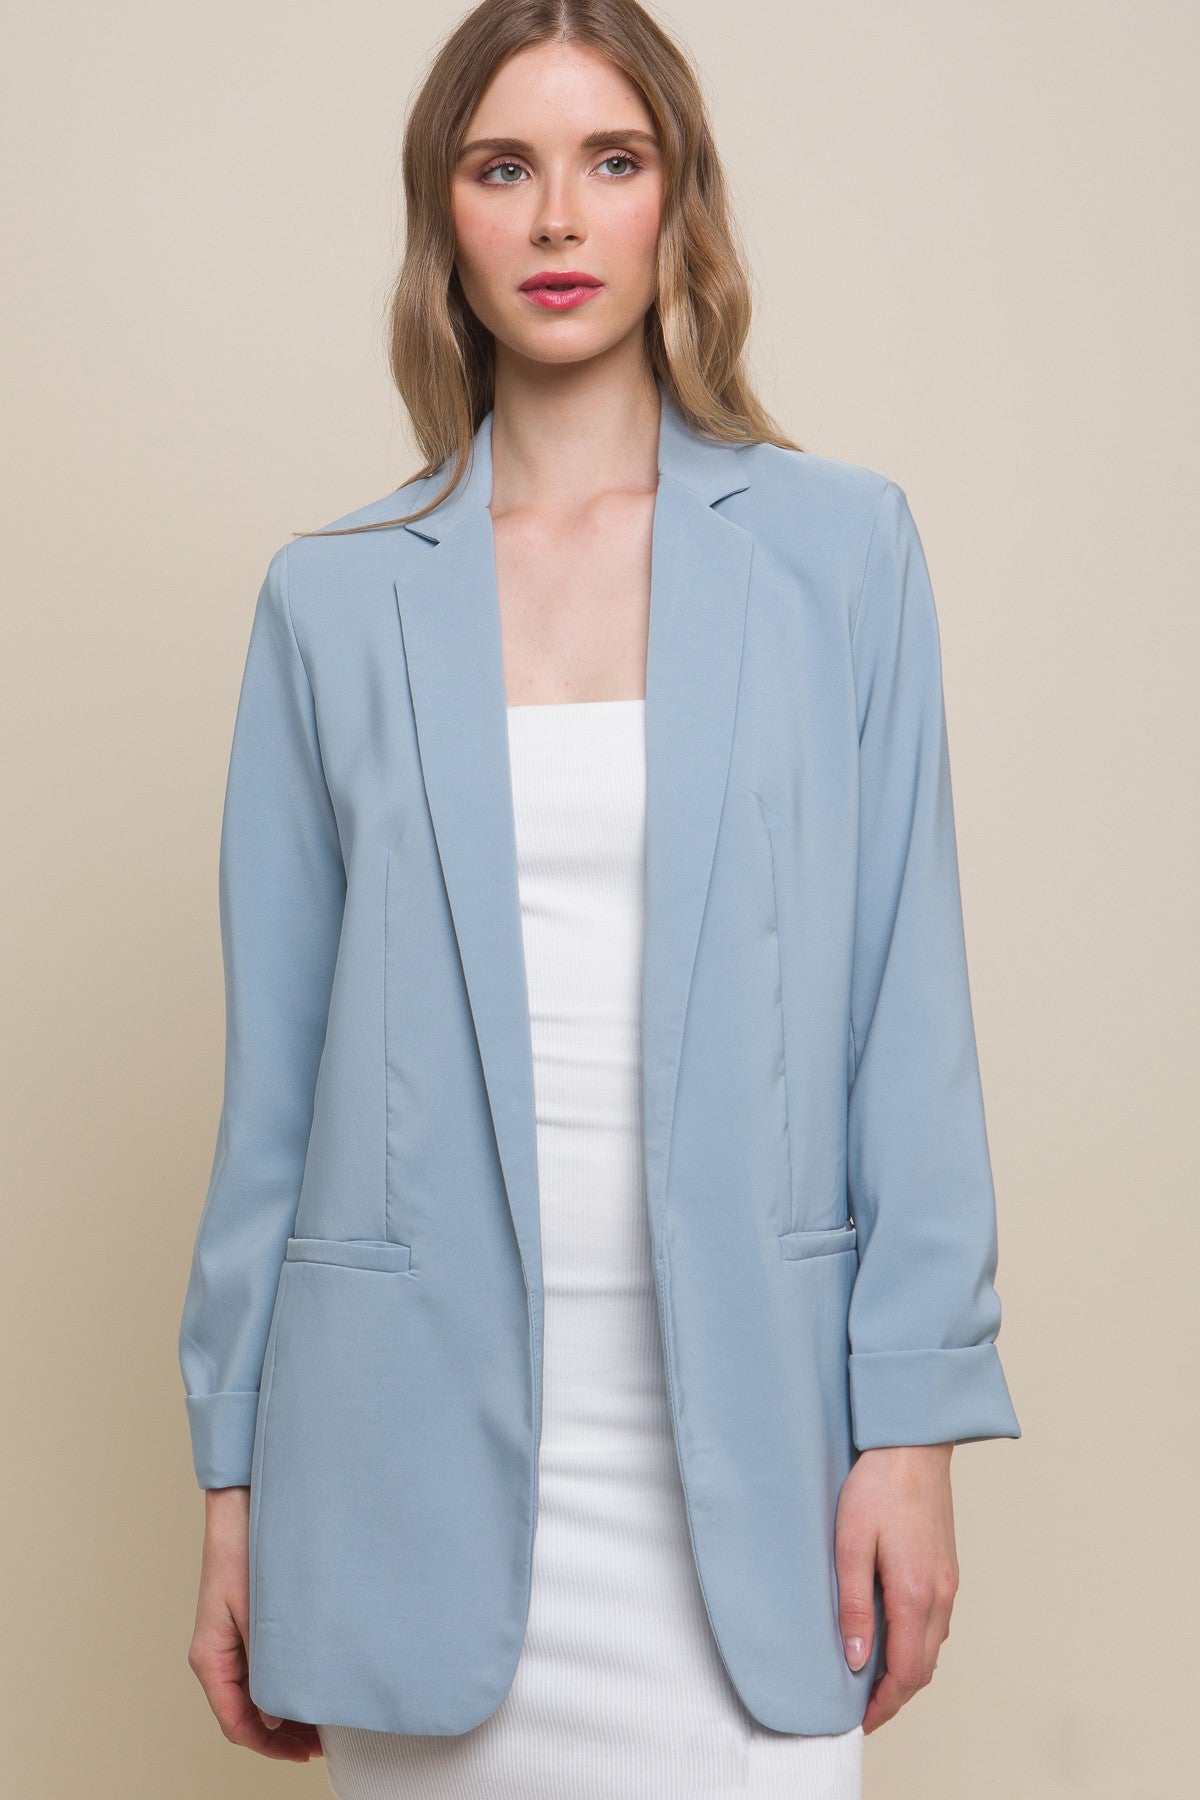 Vertigo Dusty Blue Blazer,Coats & Jackets,BLAZER, Jackets & Blazers- DEFIANT